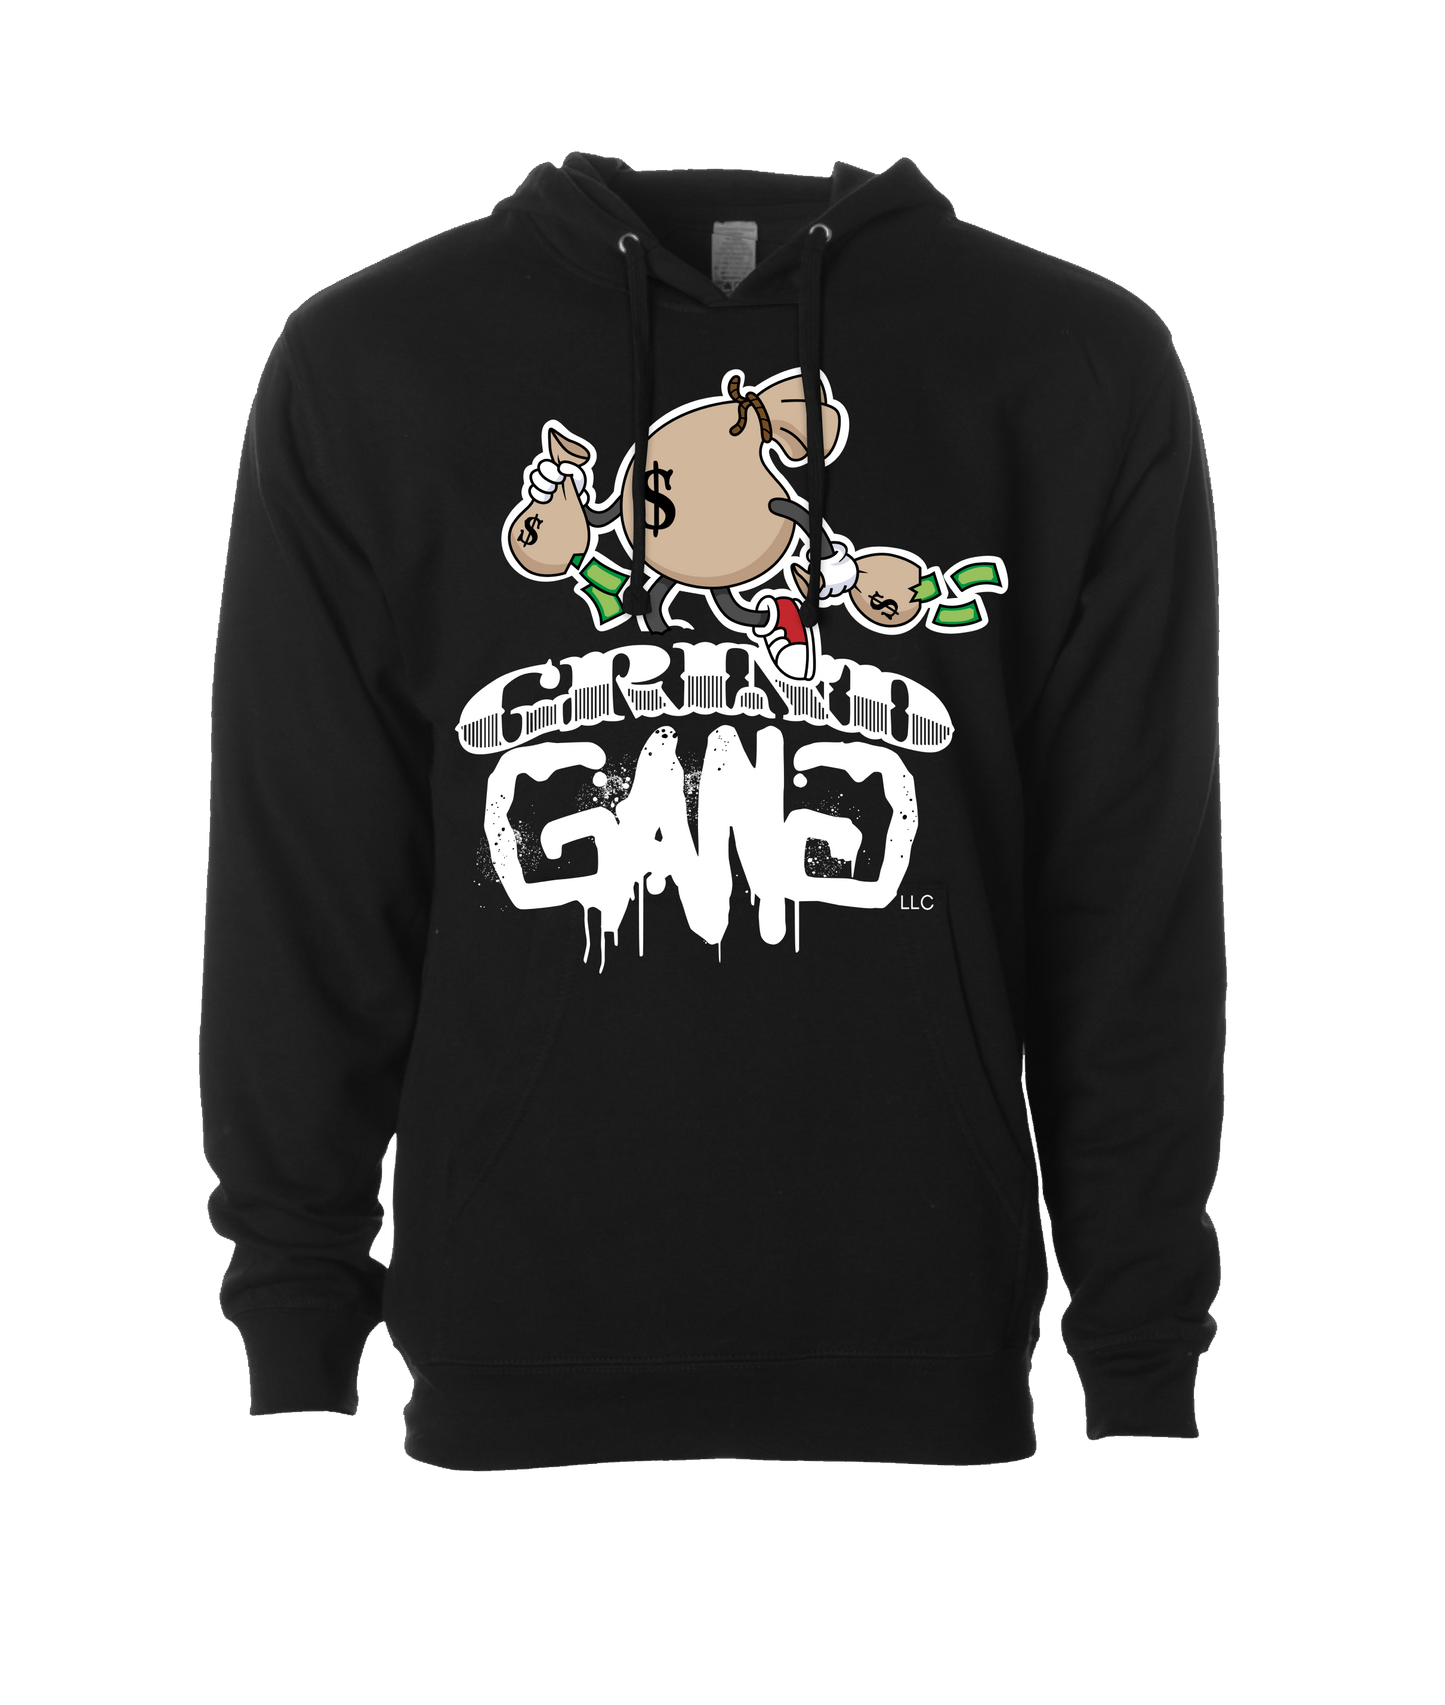 GRIND GANG ENT. LLC - MONEY BAG LOGO 1 - Black Hoodie